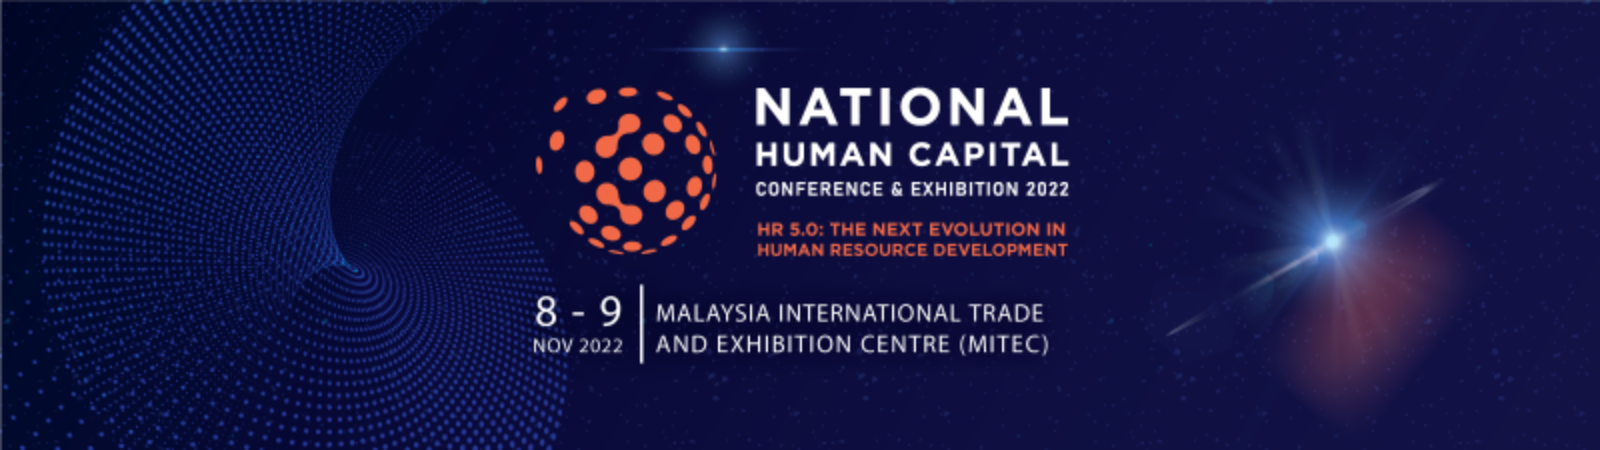 human capital development in malaysia